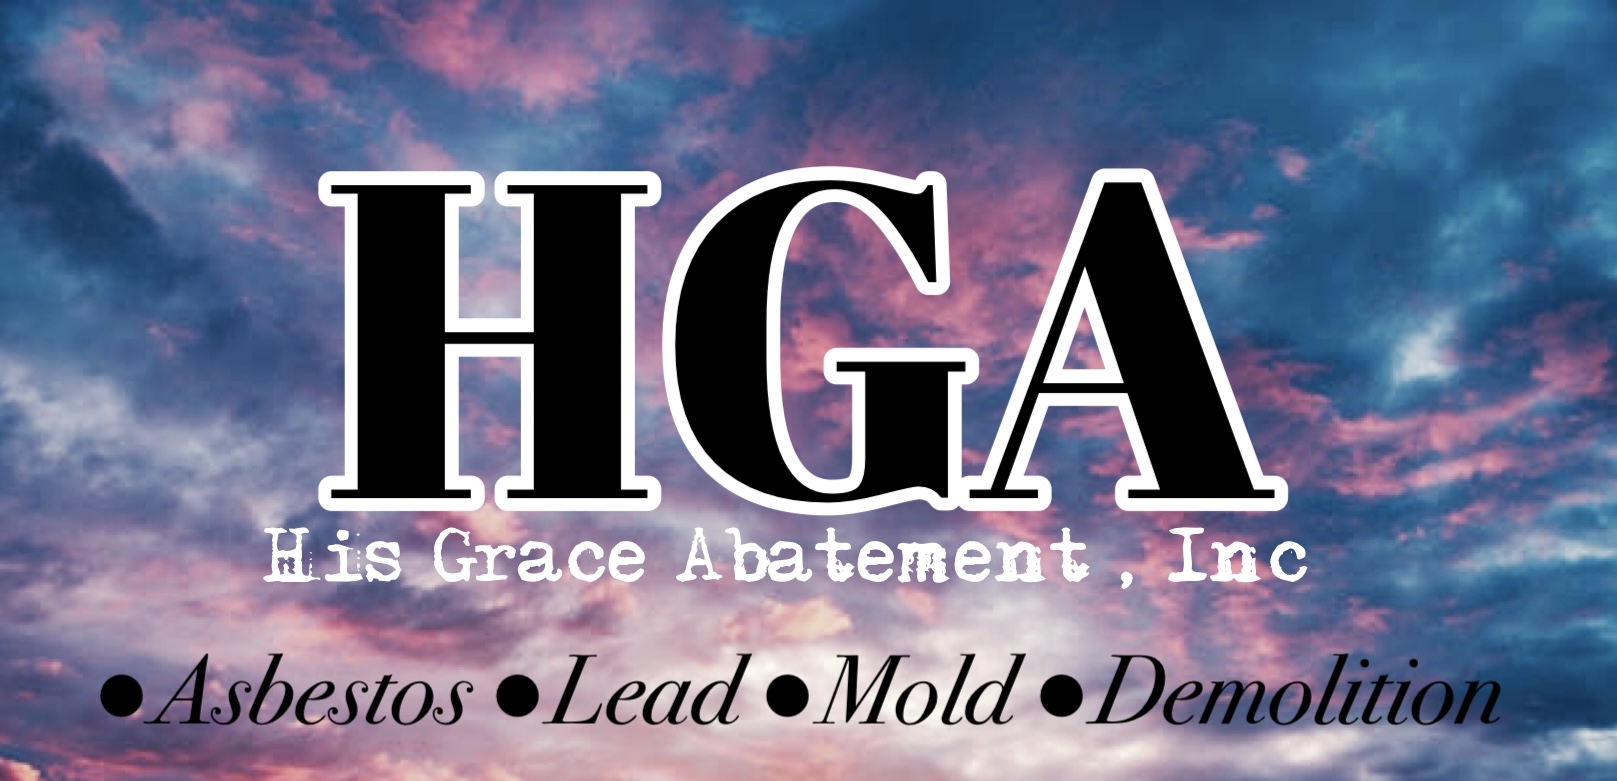 His Grace Abatement, Inc. Logo